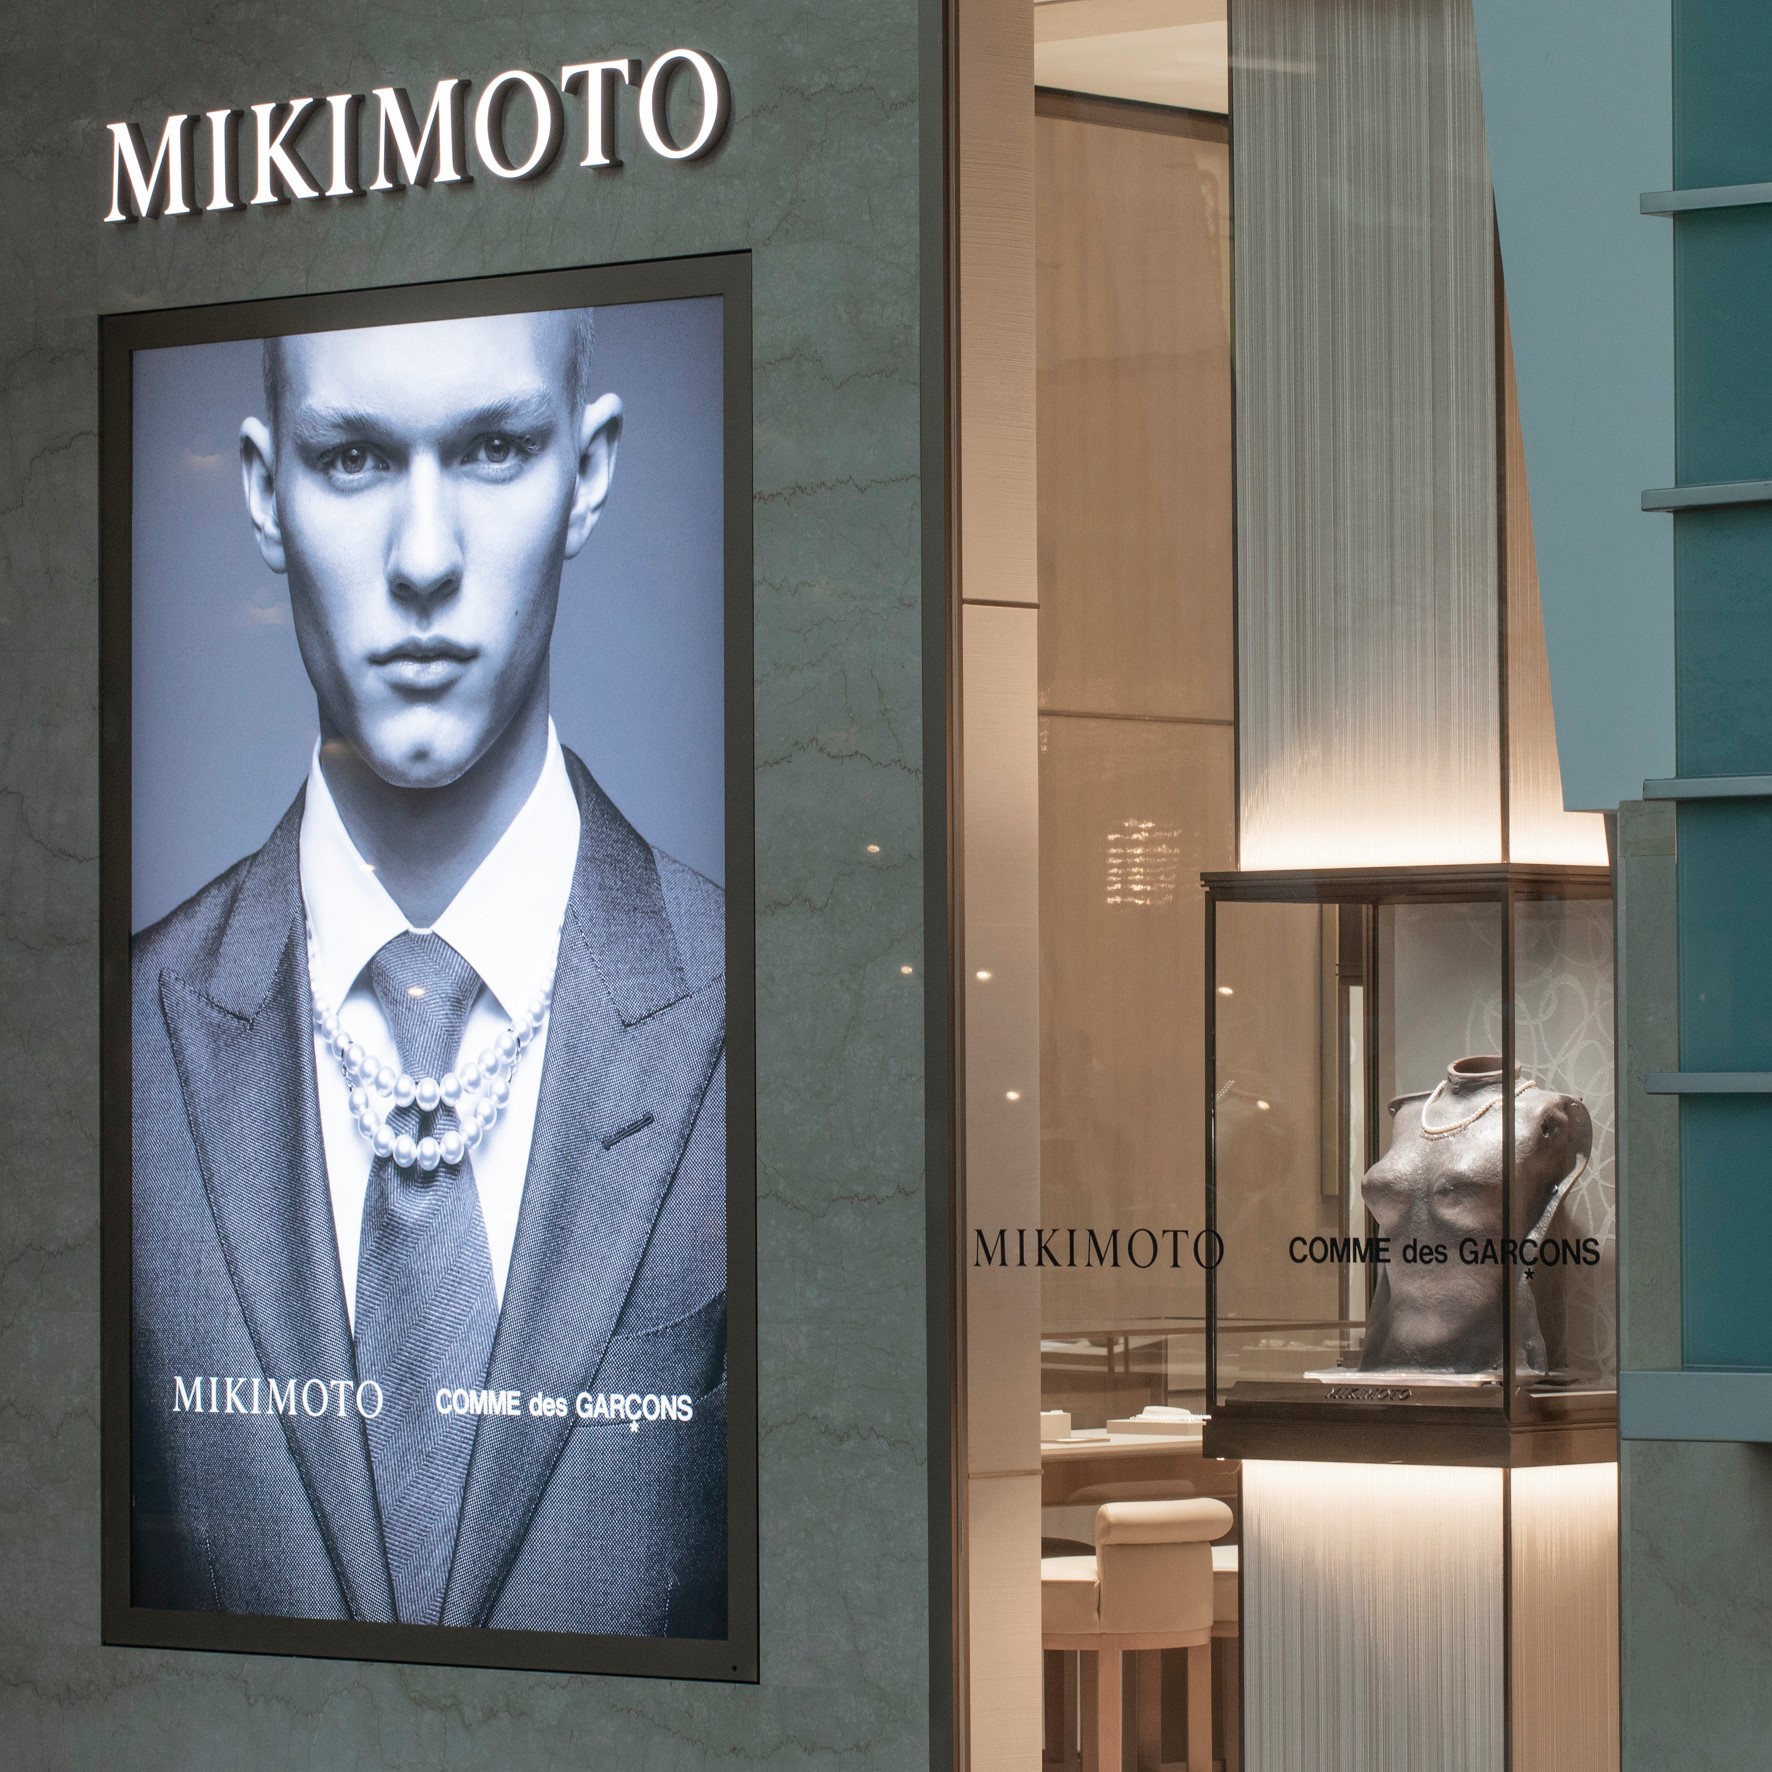 MIKIMOTO COMME des GARÇONS 聯名系列珍珠串鍊，2020 年 8 月底起於品牌台北 101 旗艦店開放預訂。